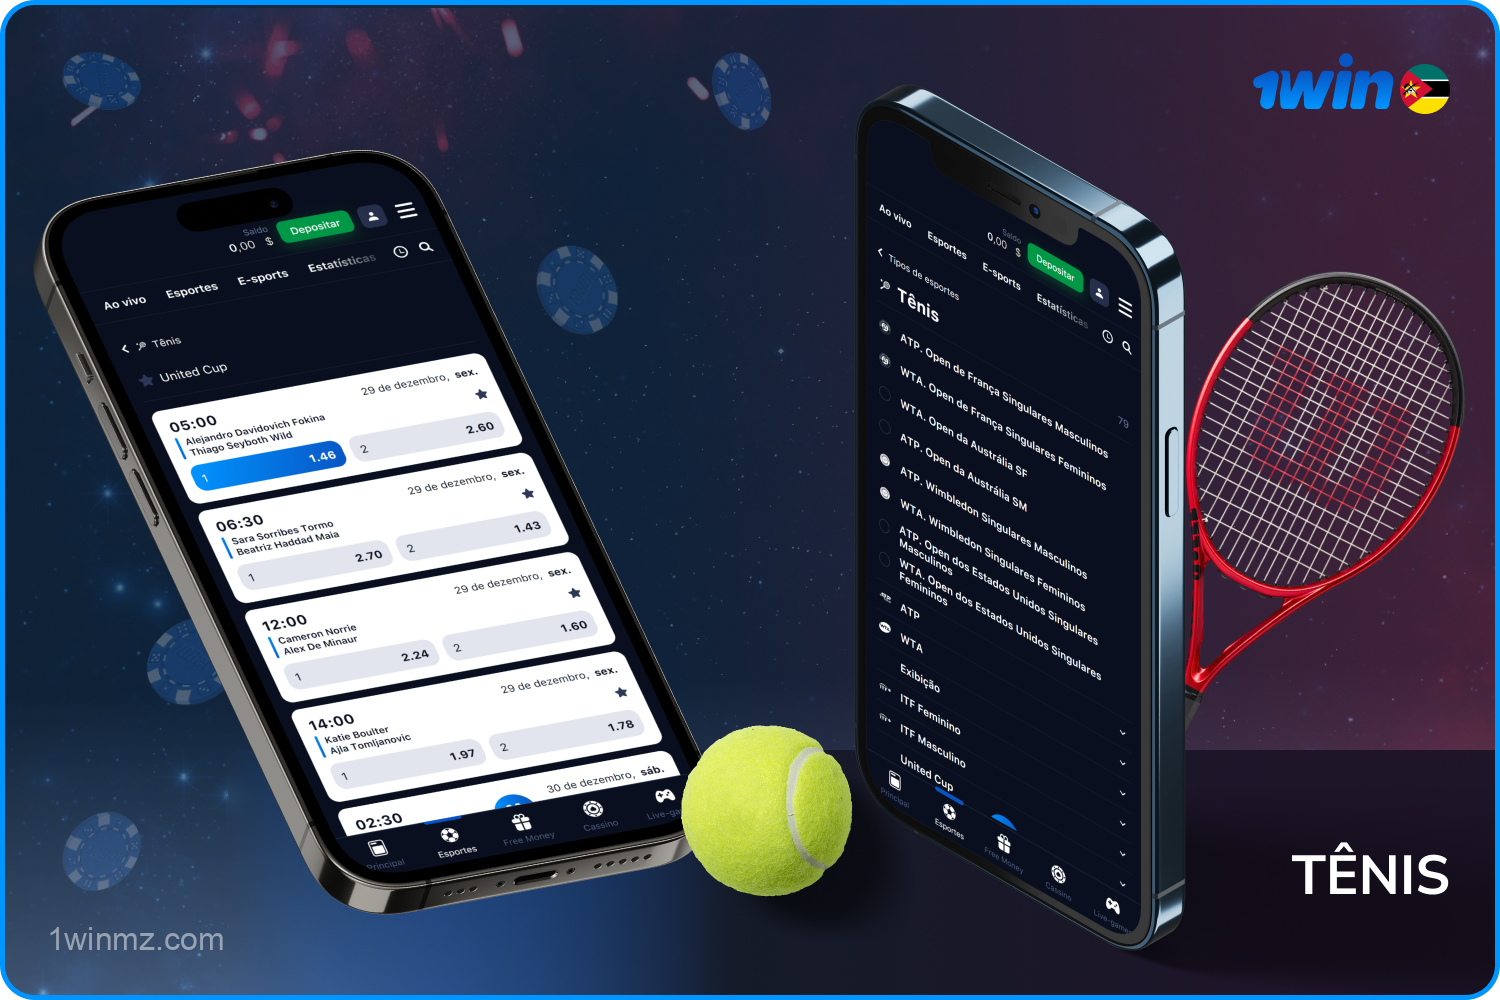 Os usuários da 1win Moçambique podem apostar em partidas de torneios de tênis famosos